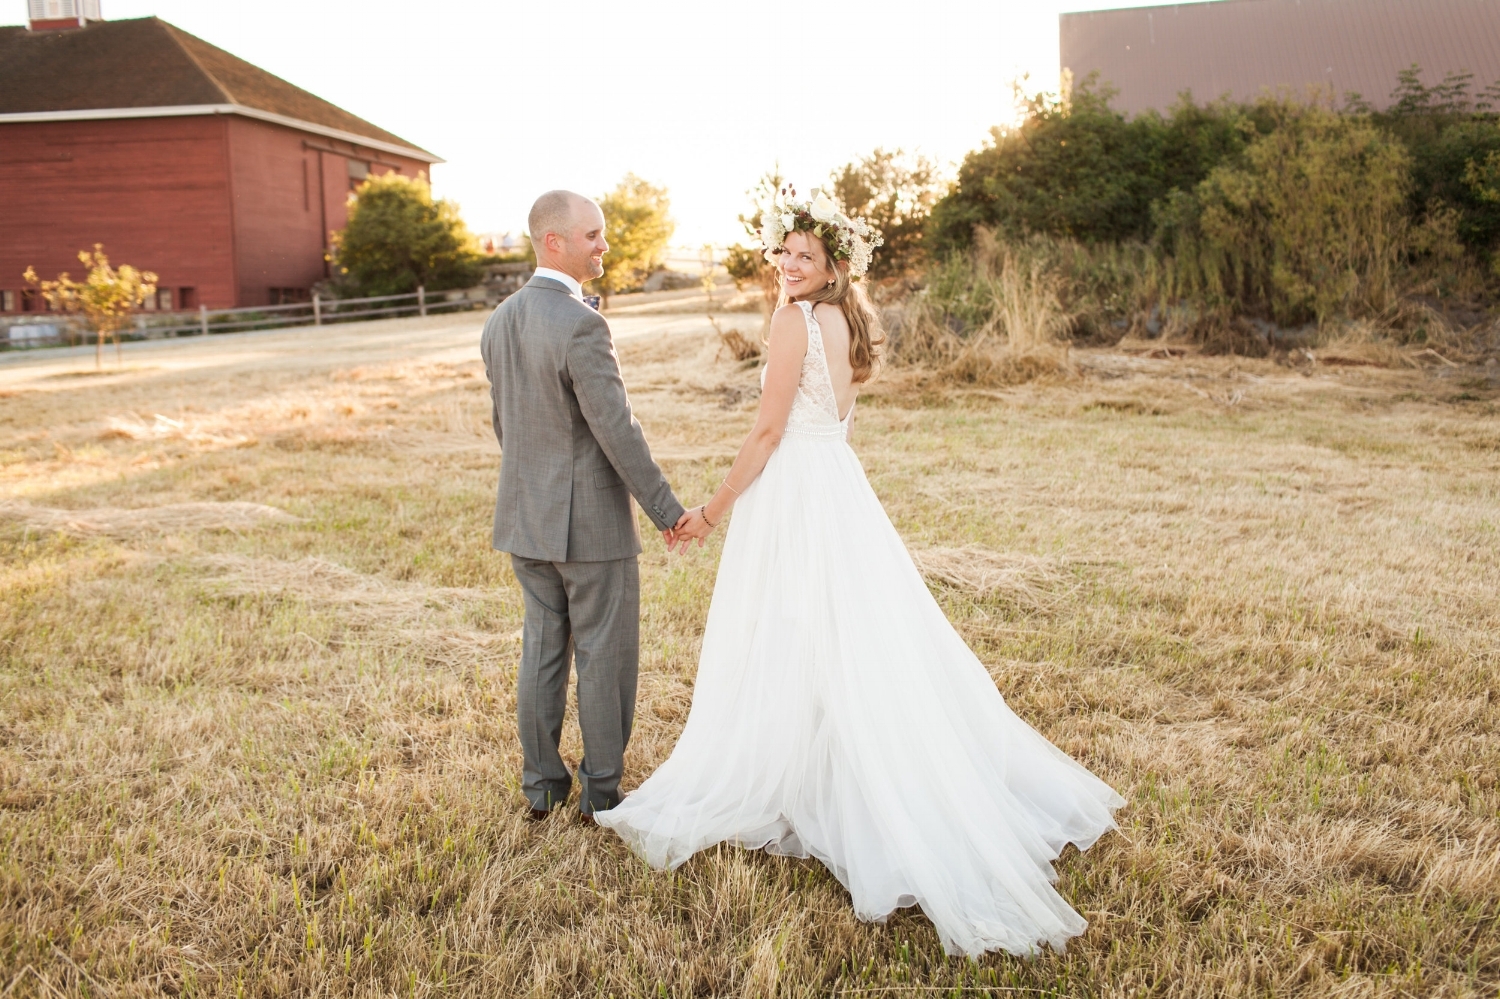 Crockett Barn Wedding Featured in Smitten Magazine